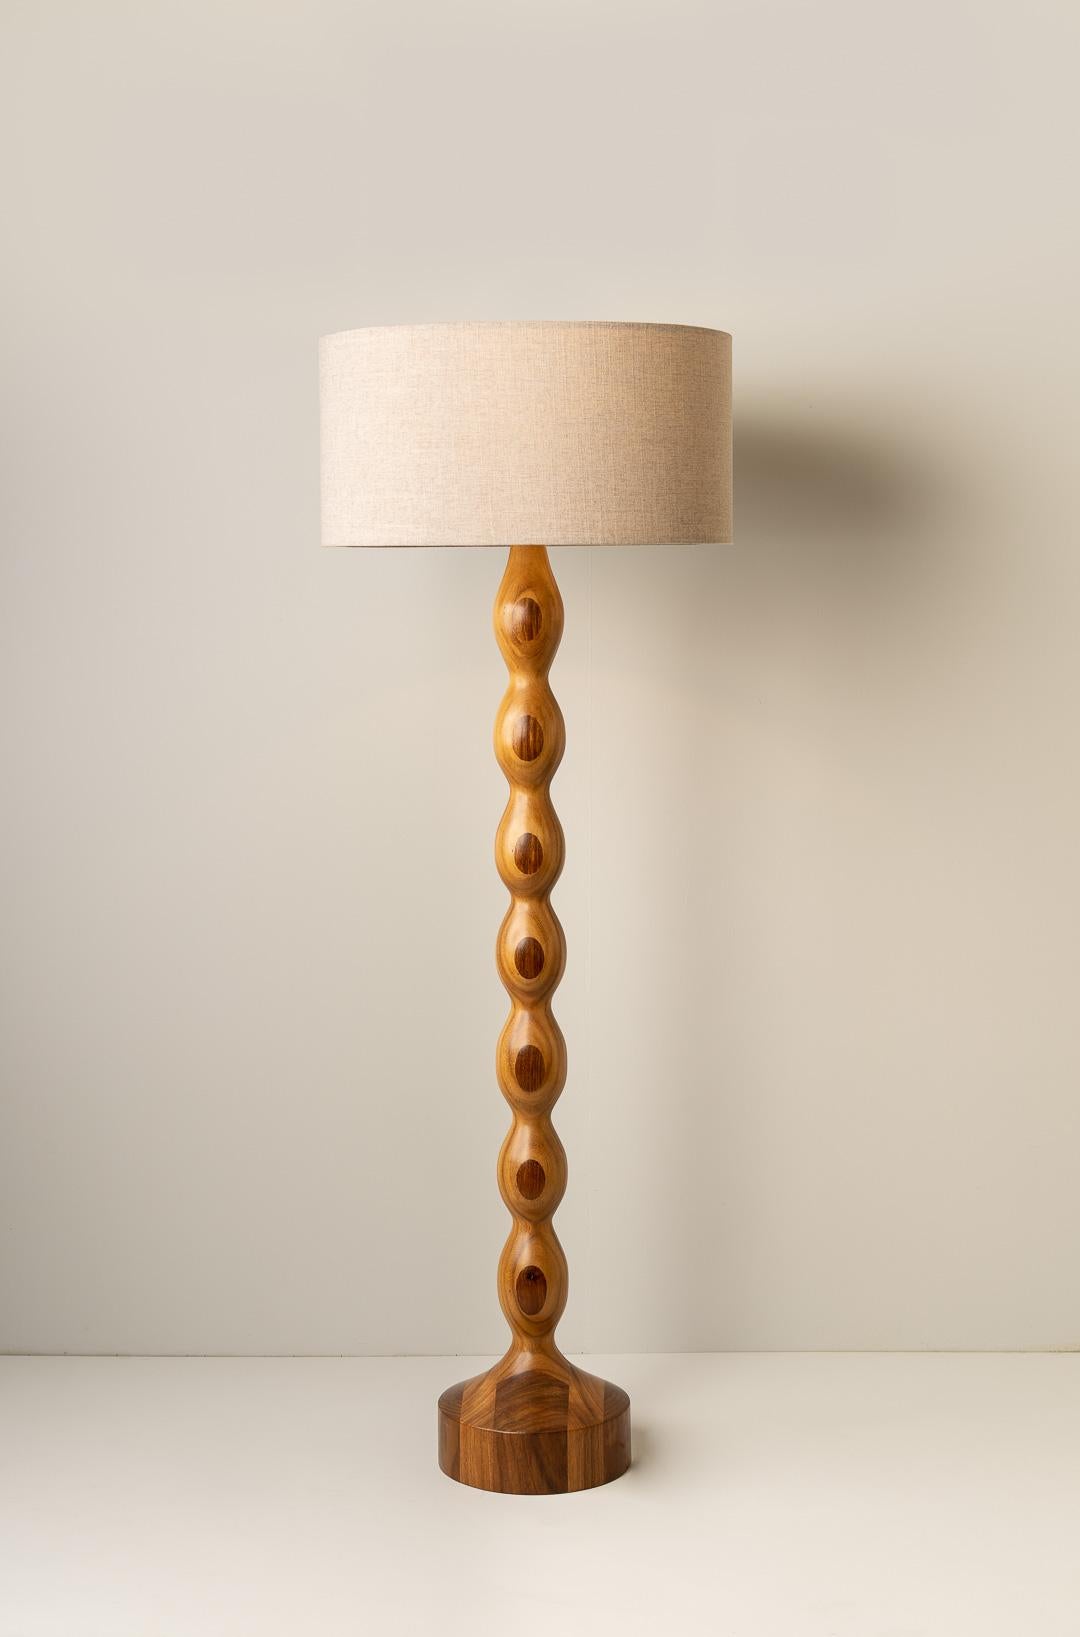 Le lampadaire TAMARINDO a été conçu pour la collection De Palo de l'artiste mexicaine Isabel Moncada.

Sa base ondulée symétrique est intemporelle avec des proportions et des finitions qui font de Tamarindo une pièce éclectique mais contemporaine.